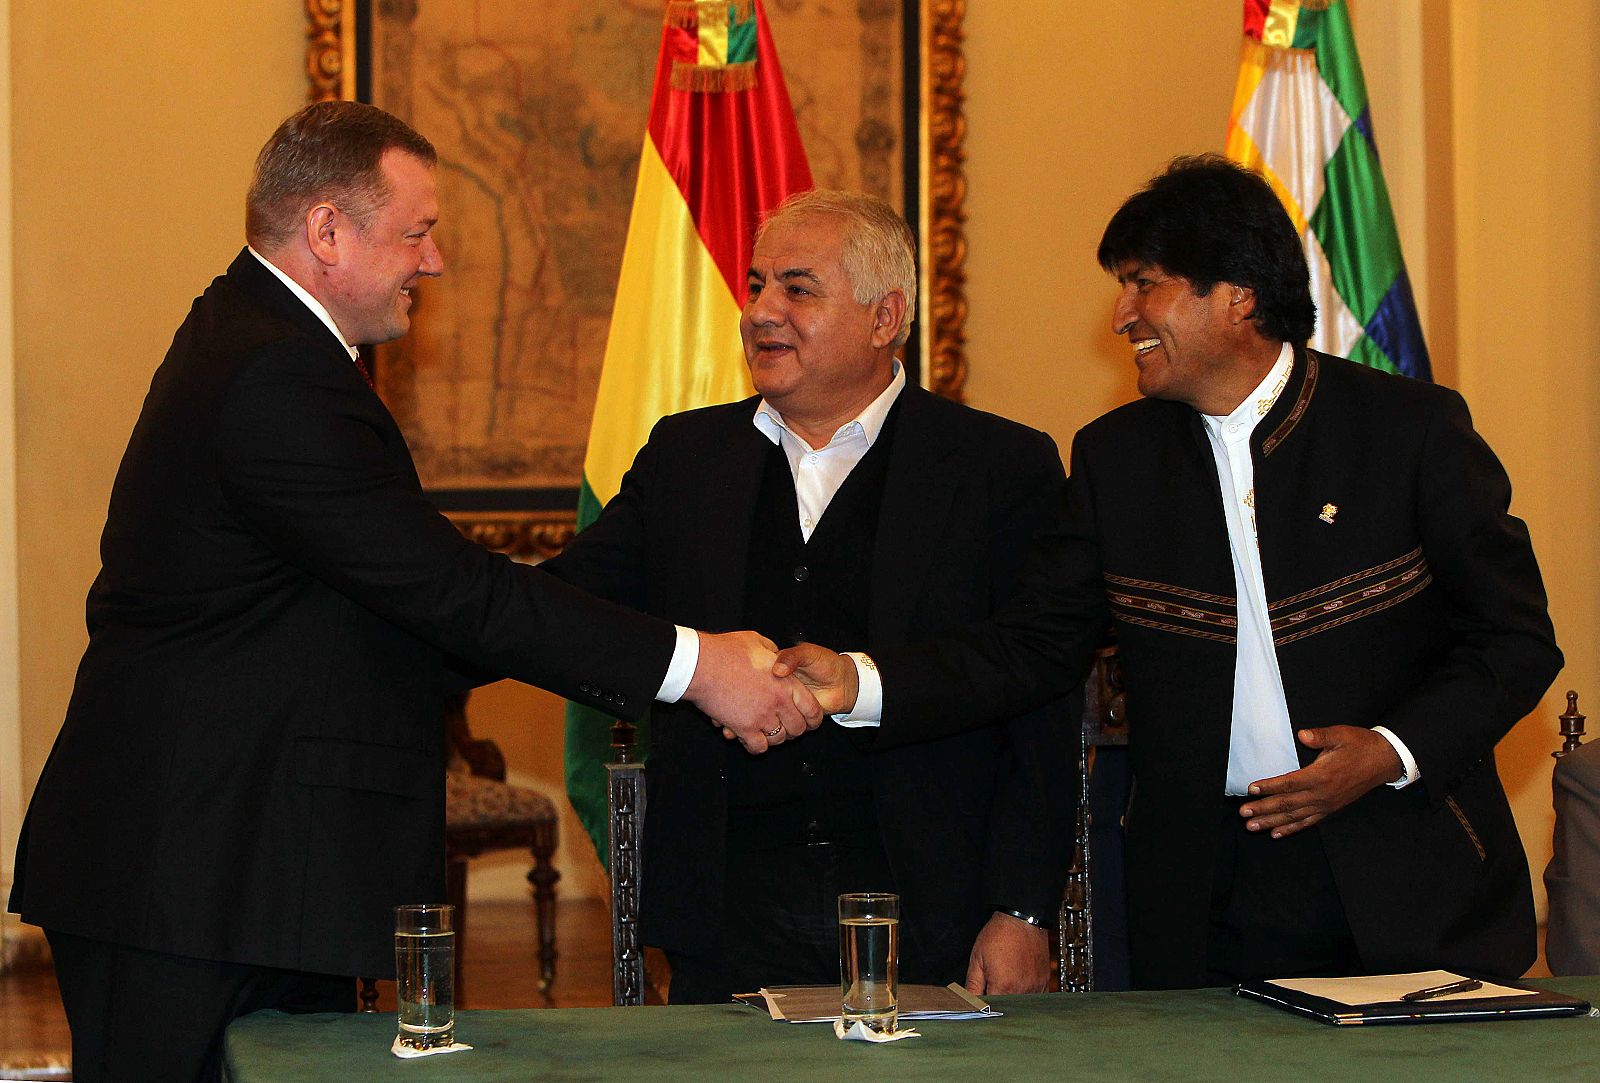 El presidente de Bolivia Evo Morales saluda al vicedirector, gerente y director de operaciones de Gazprom, Roman Kuznetcov, junto al ministro de hidrocarburos y energía, Juan José Sosa